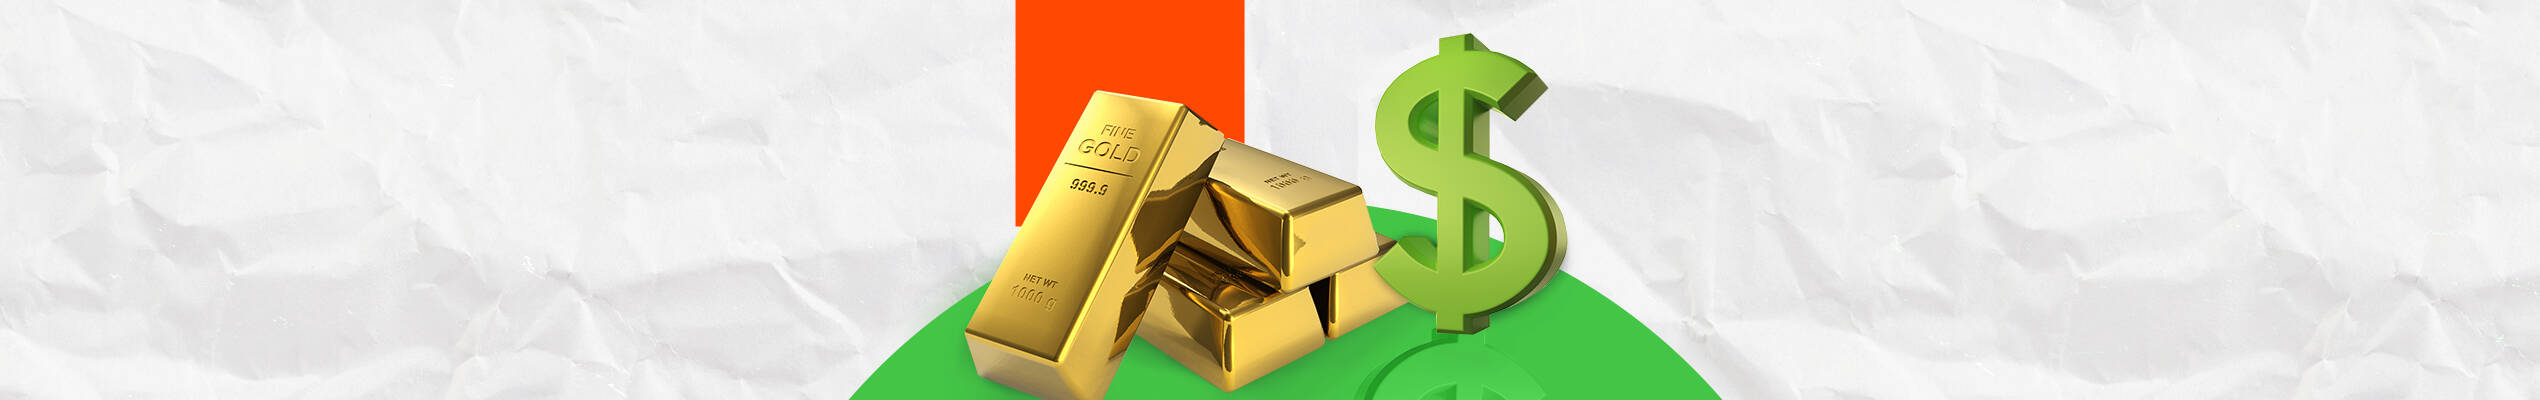 الذهب يسجل اكبر ارتفاع يومي منذ اكثر من شهر 